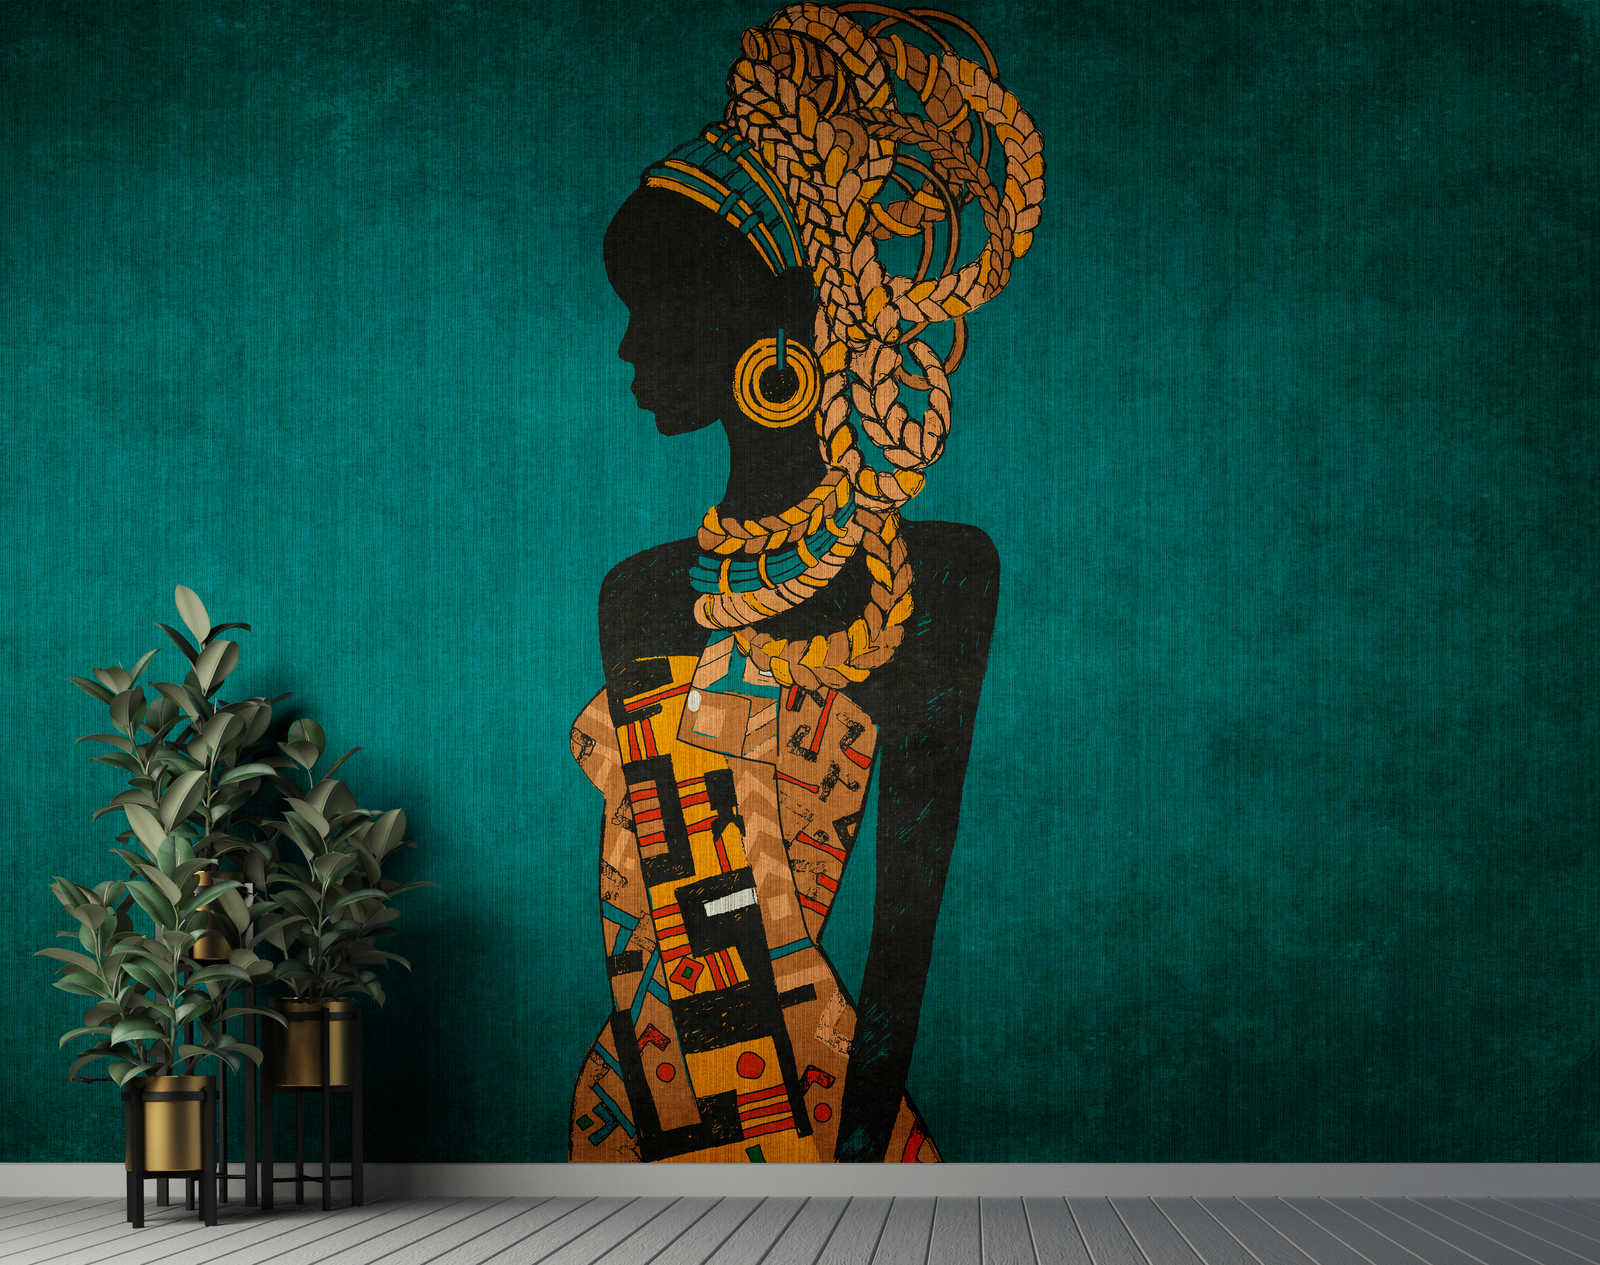             Nairobi 2 - Papier peint africain pétrole avec silhouette de femme
        